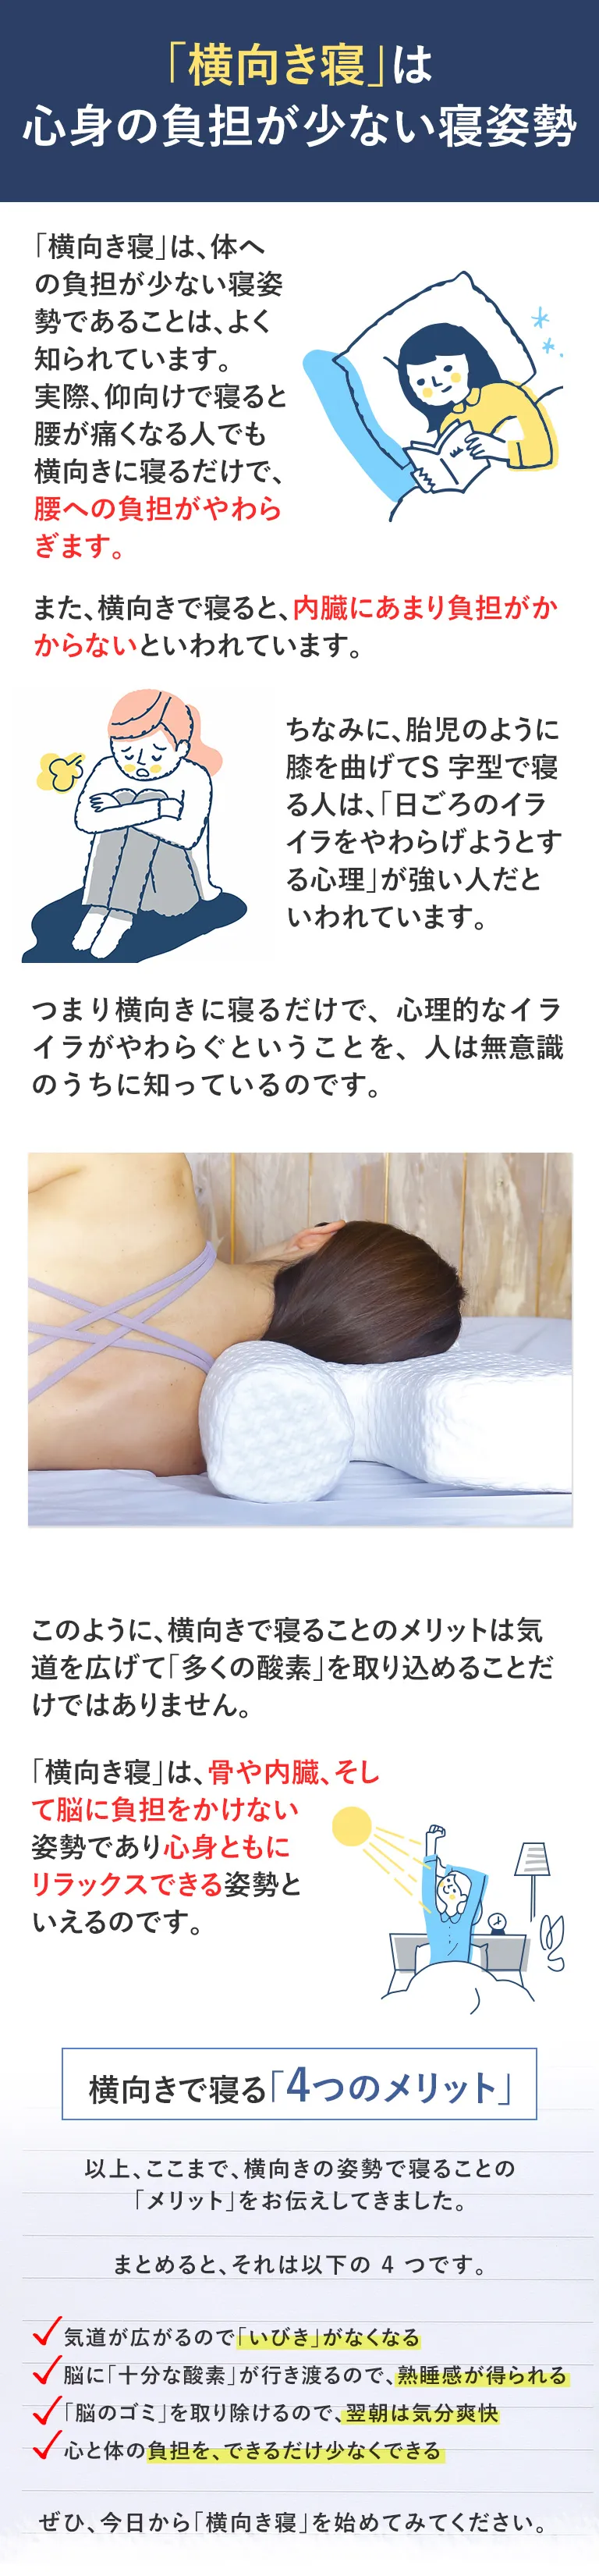 寝ている間に心身共にリカバリーできる 横向きサポート枕『YOKONE3B』